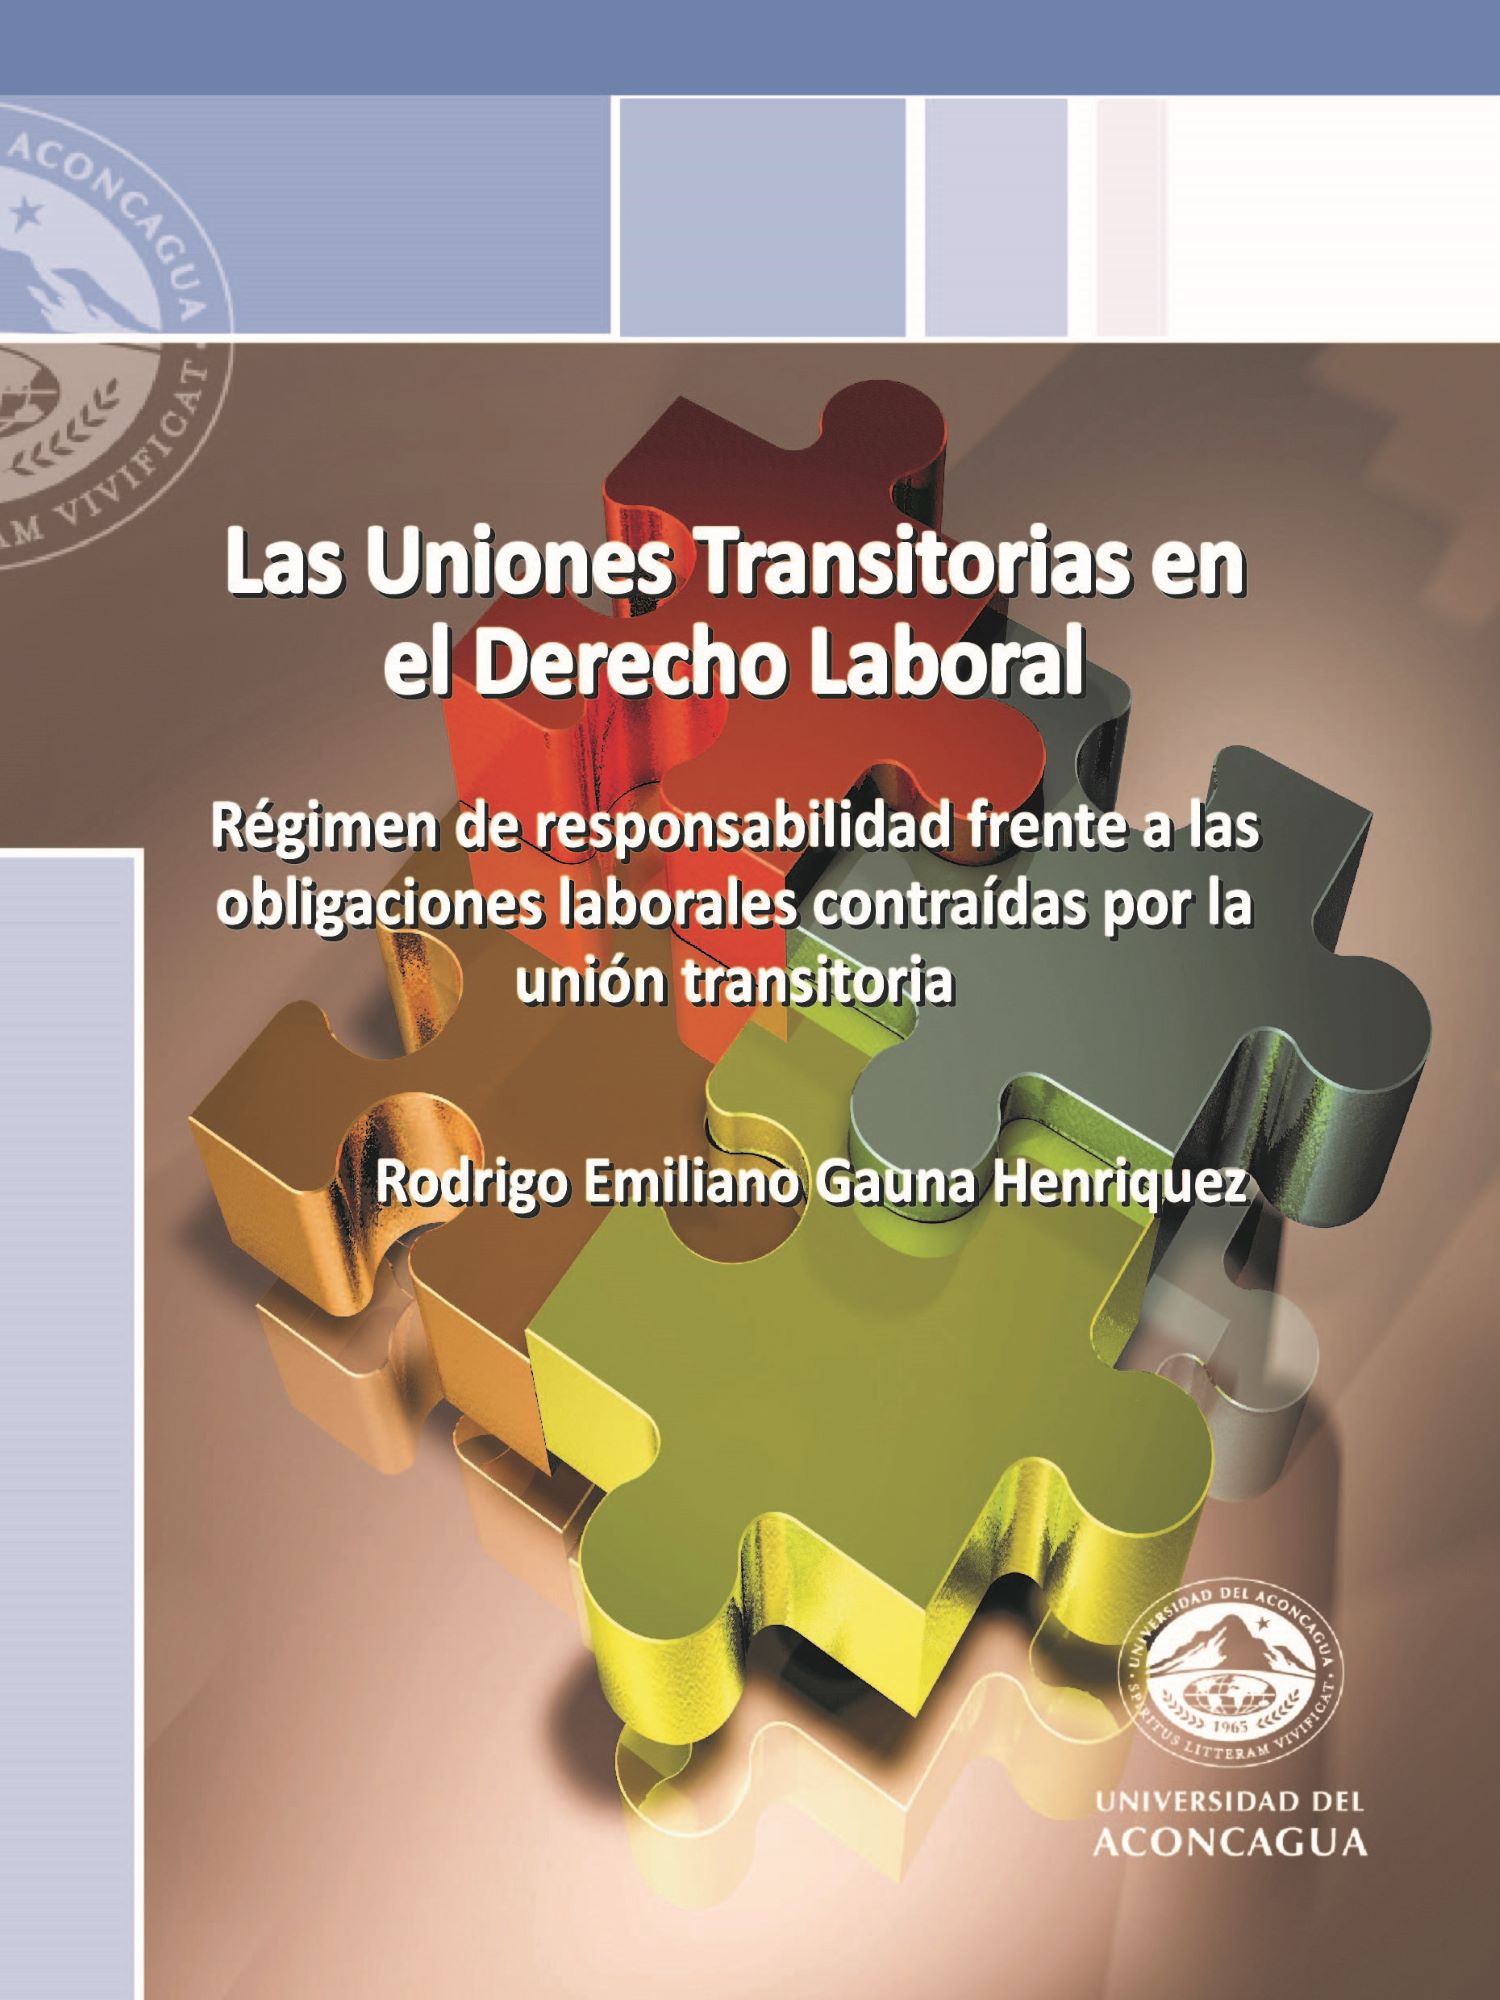 Las Uniones Transitorias en el Derecho Laboral